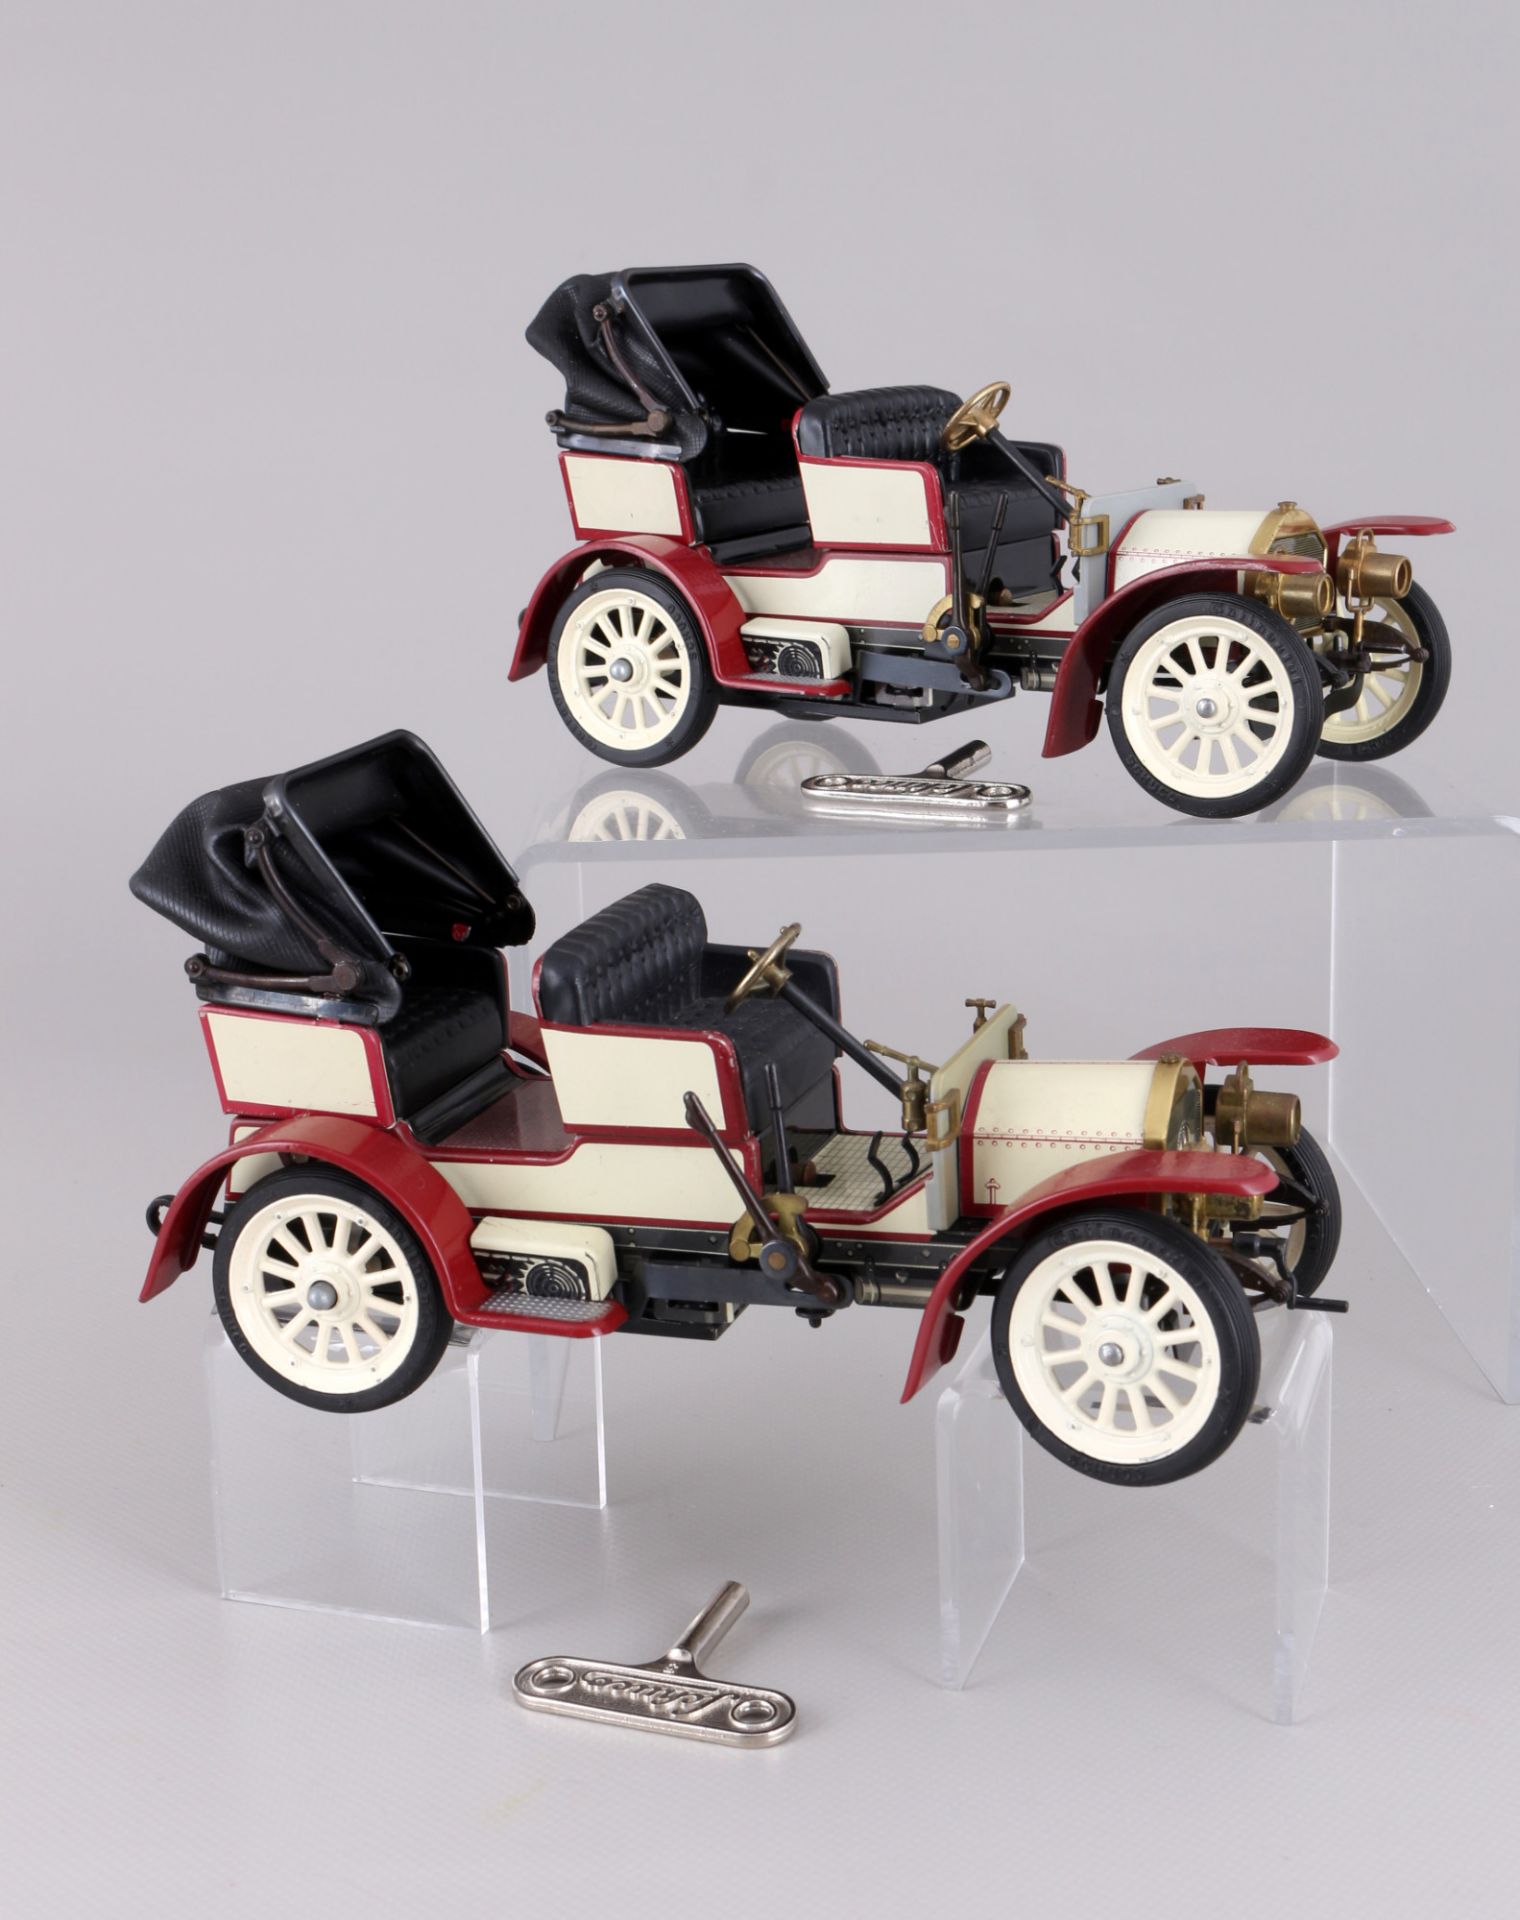 Schuco 6 oldtimer - Mercedes, Ford und Opel, old timer model cars, - Image 5 of 9